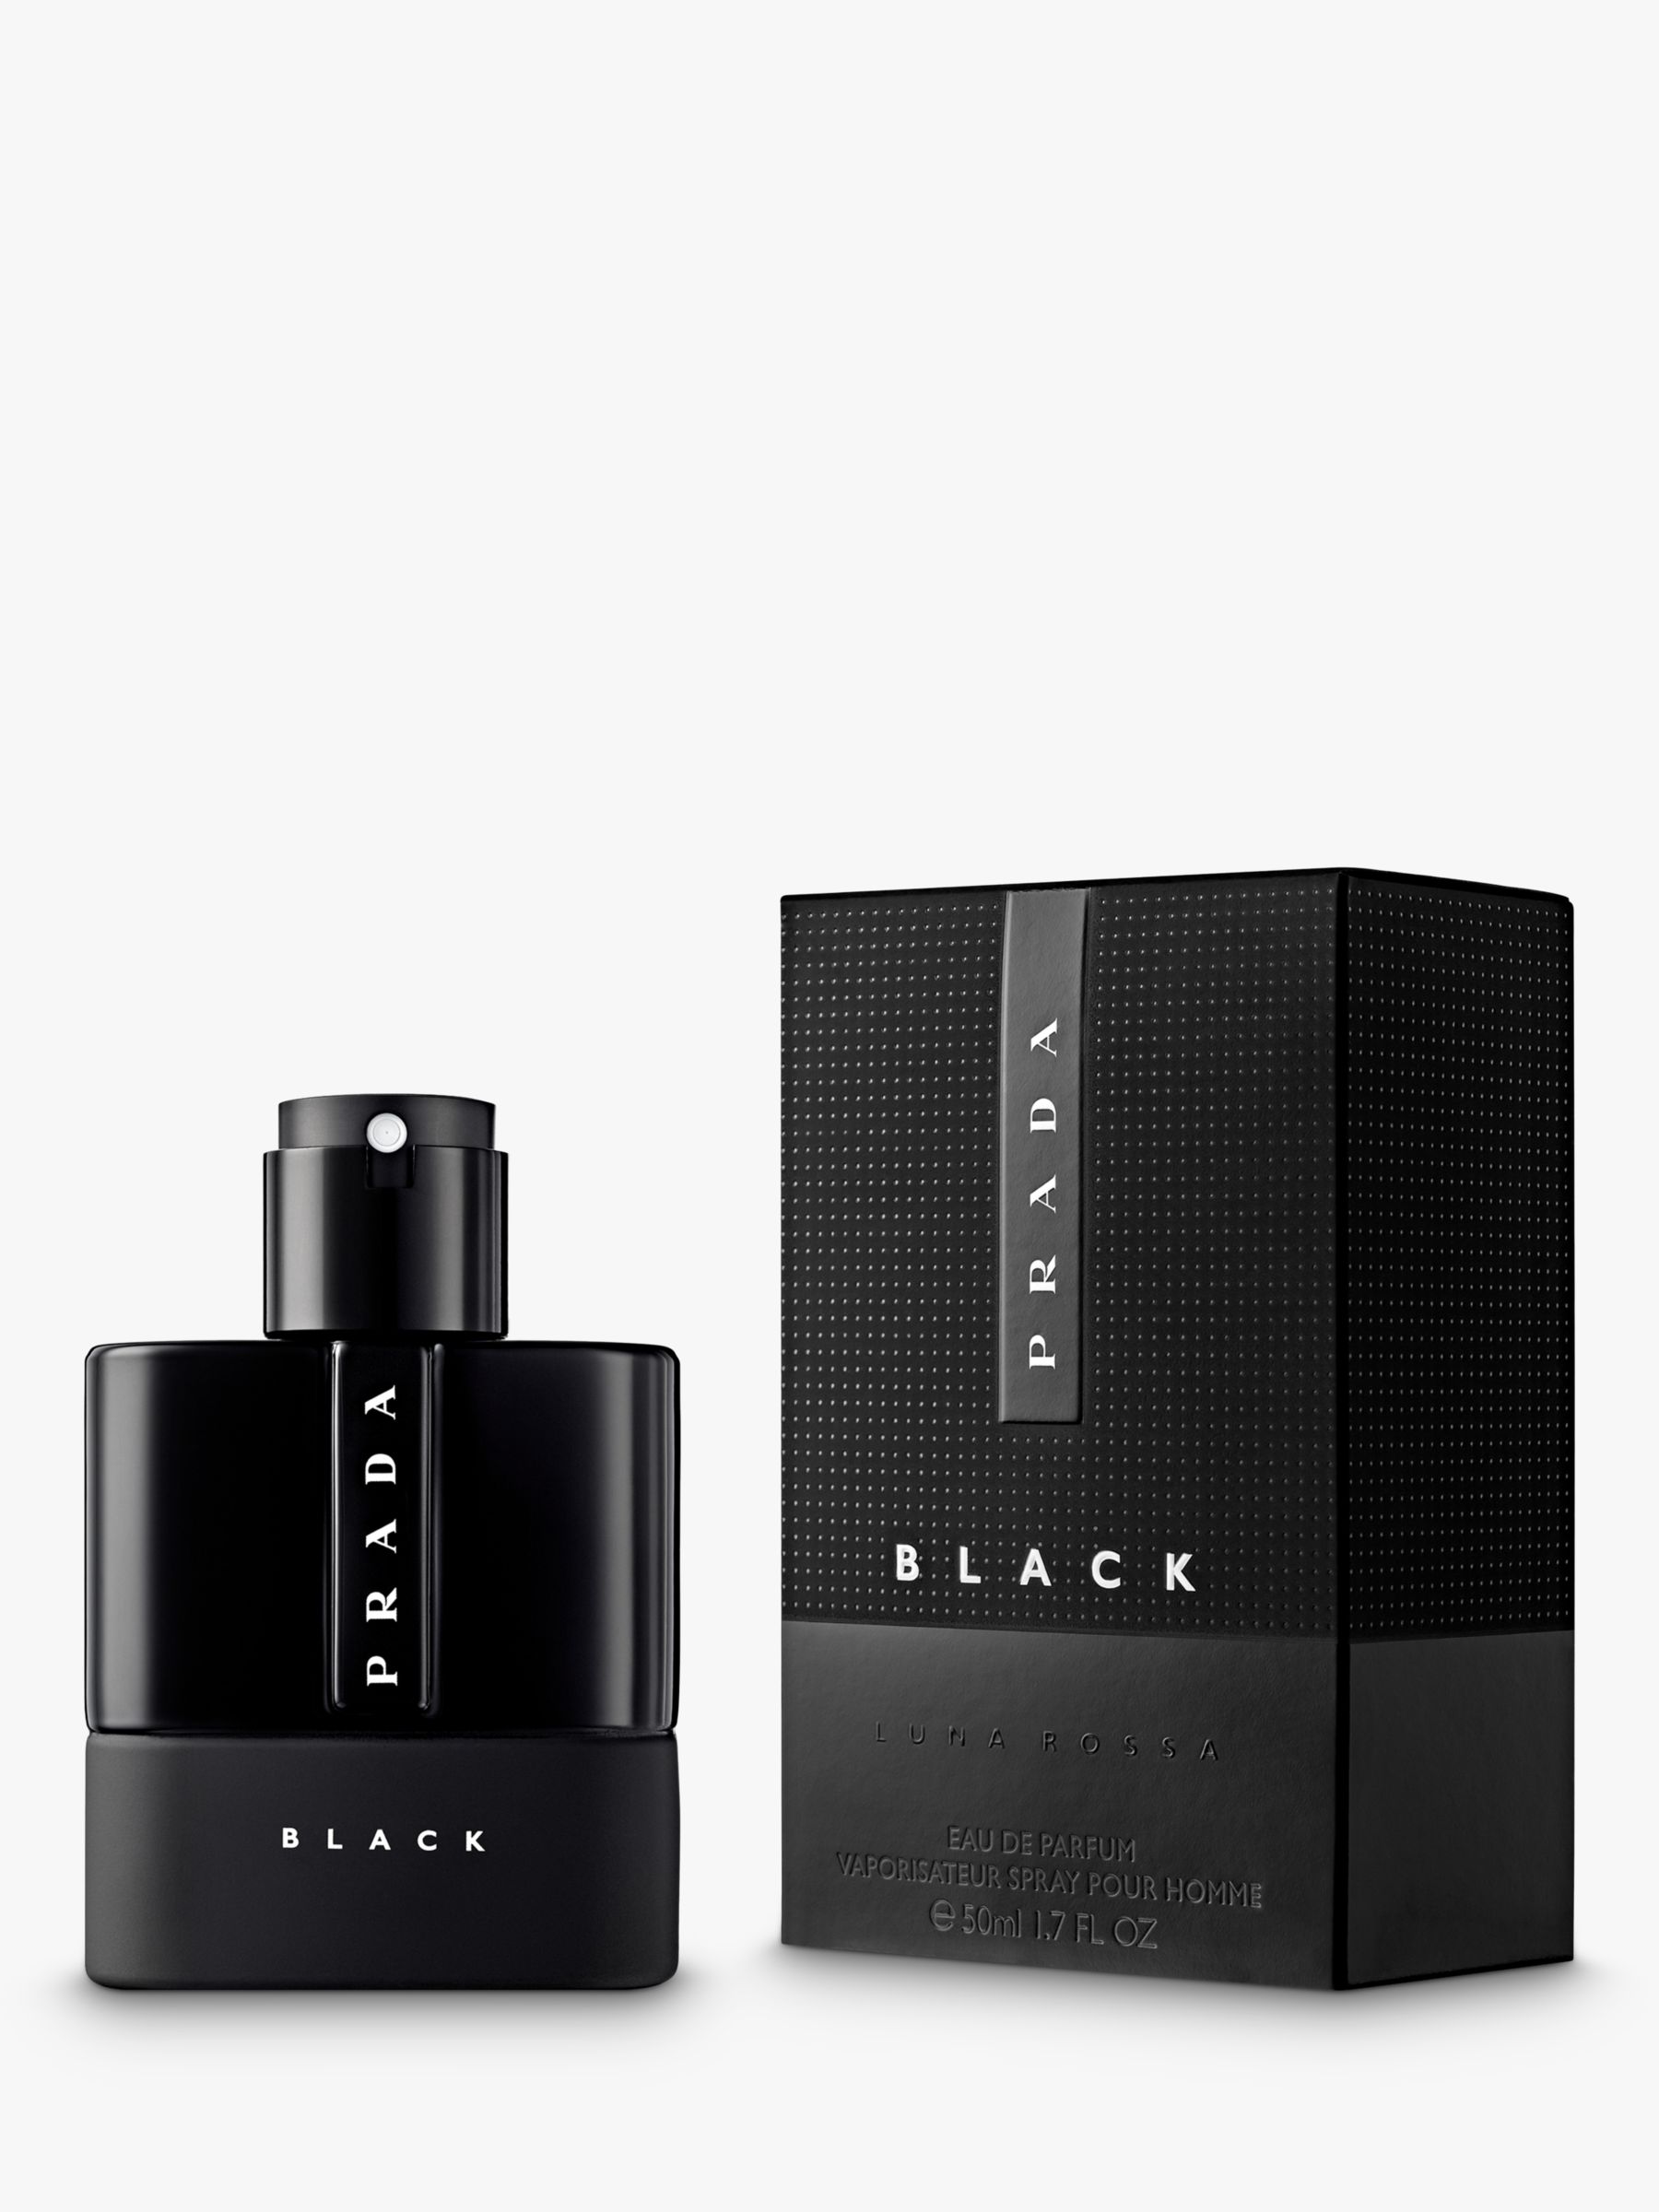 prada black aftershave gift set, OFF 74 